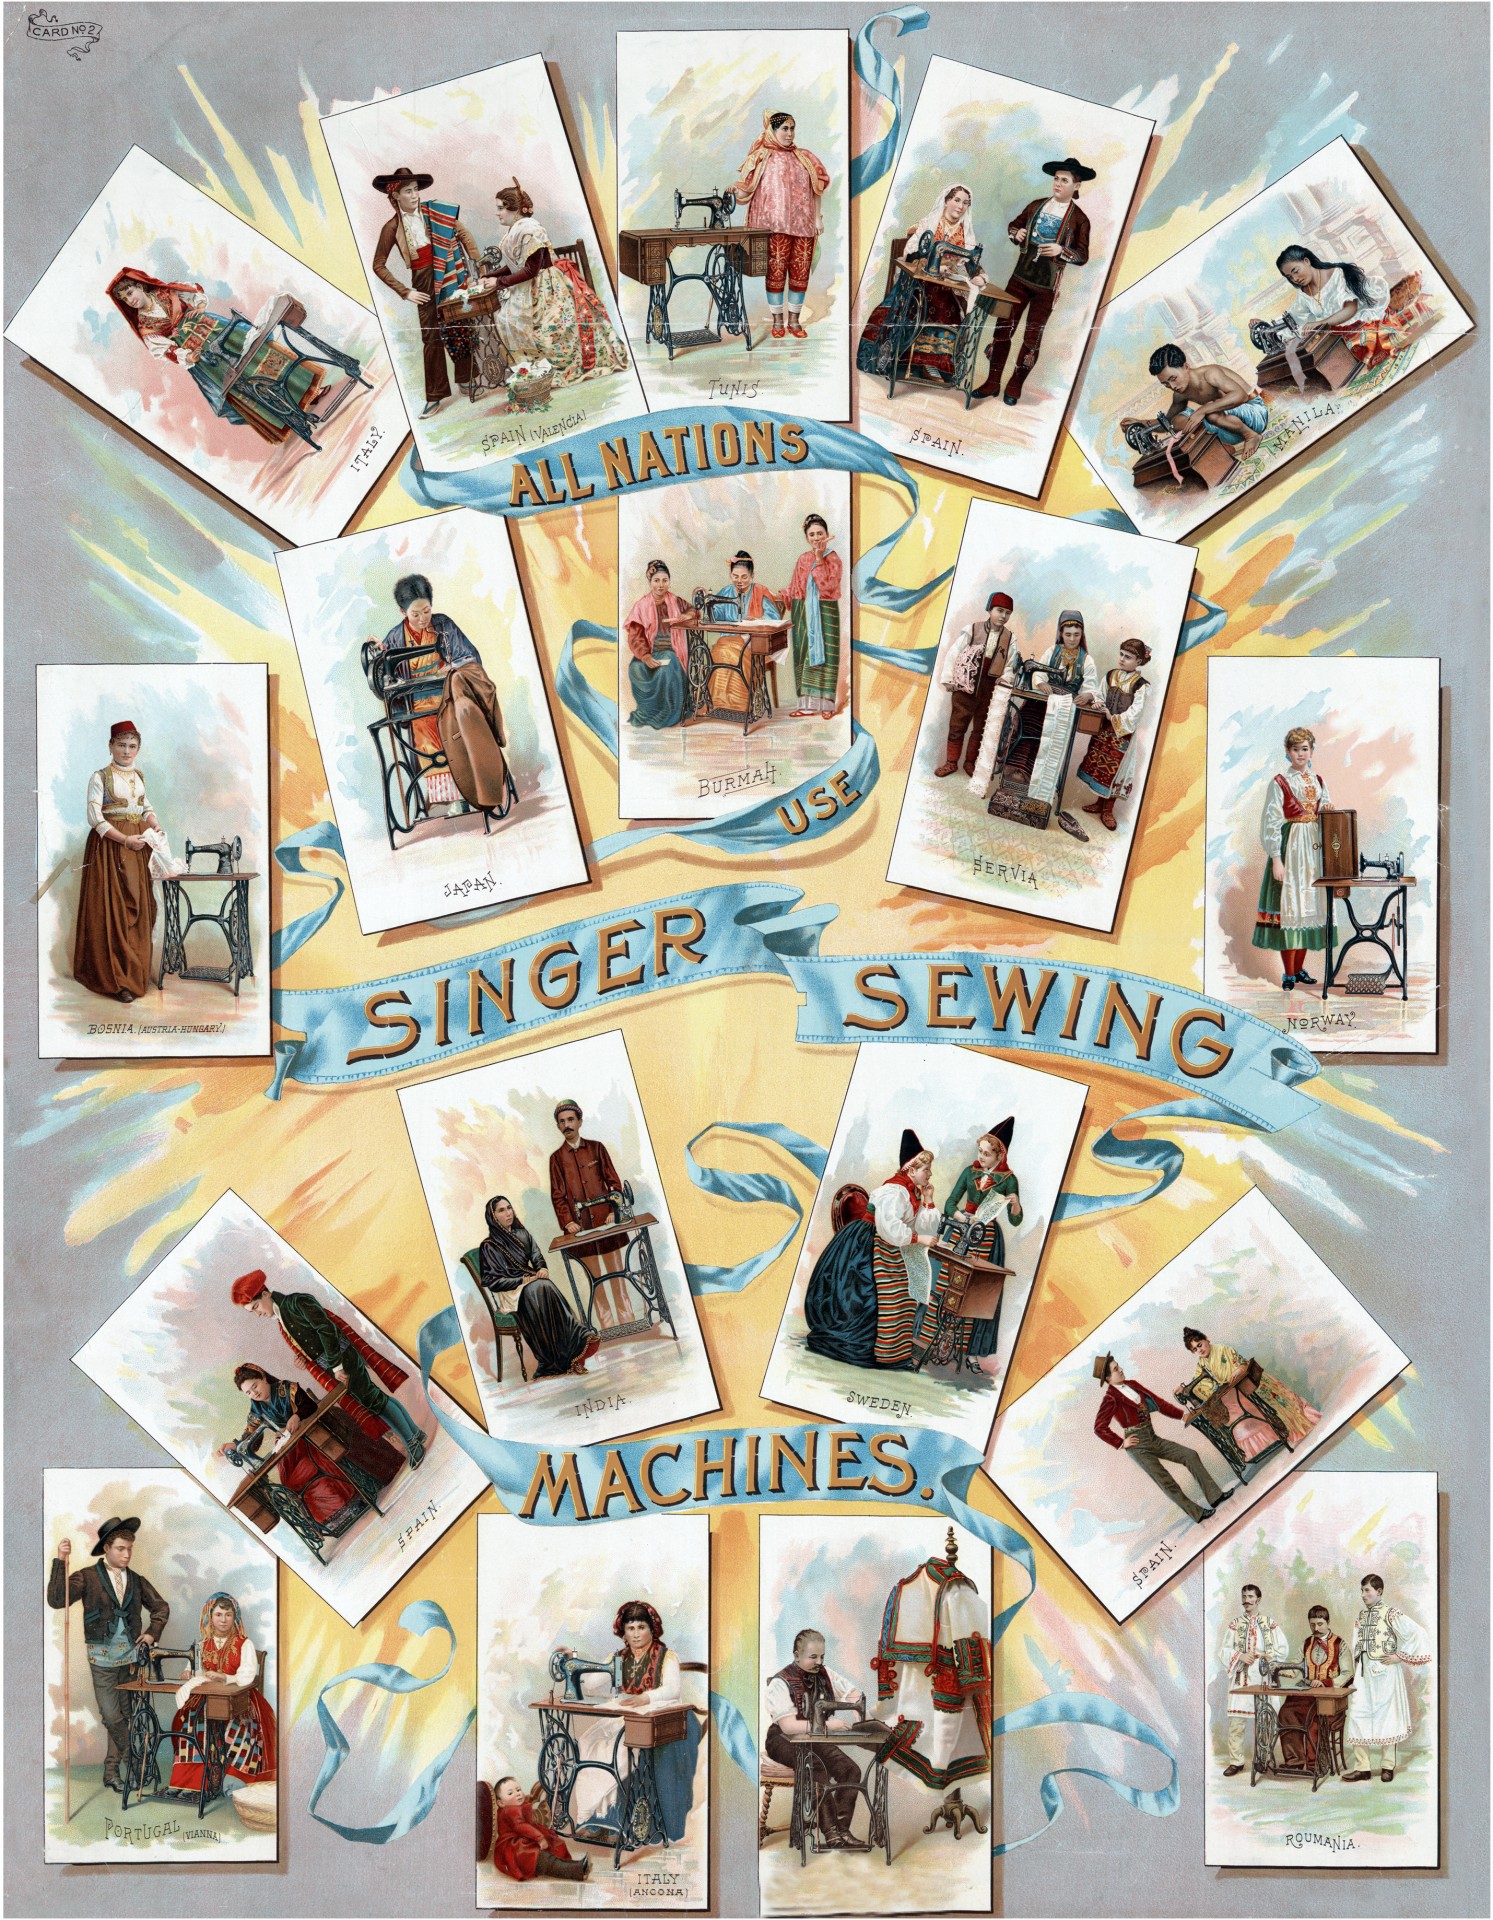 singer singer sewing machine sewing machine free photo